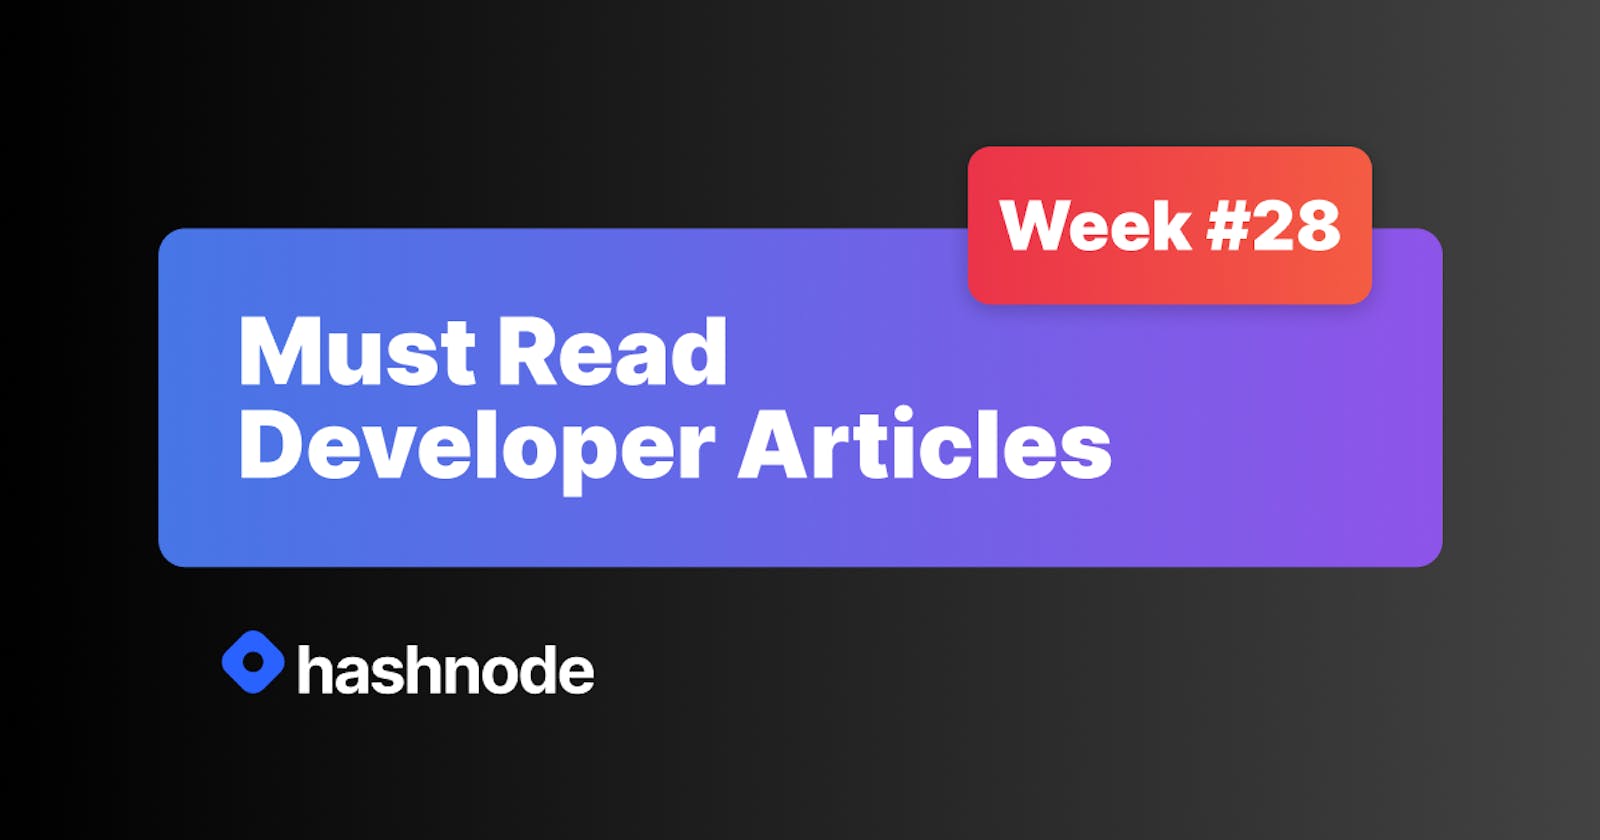 Must Read Developer Articles on Hashnode - #28